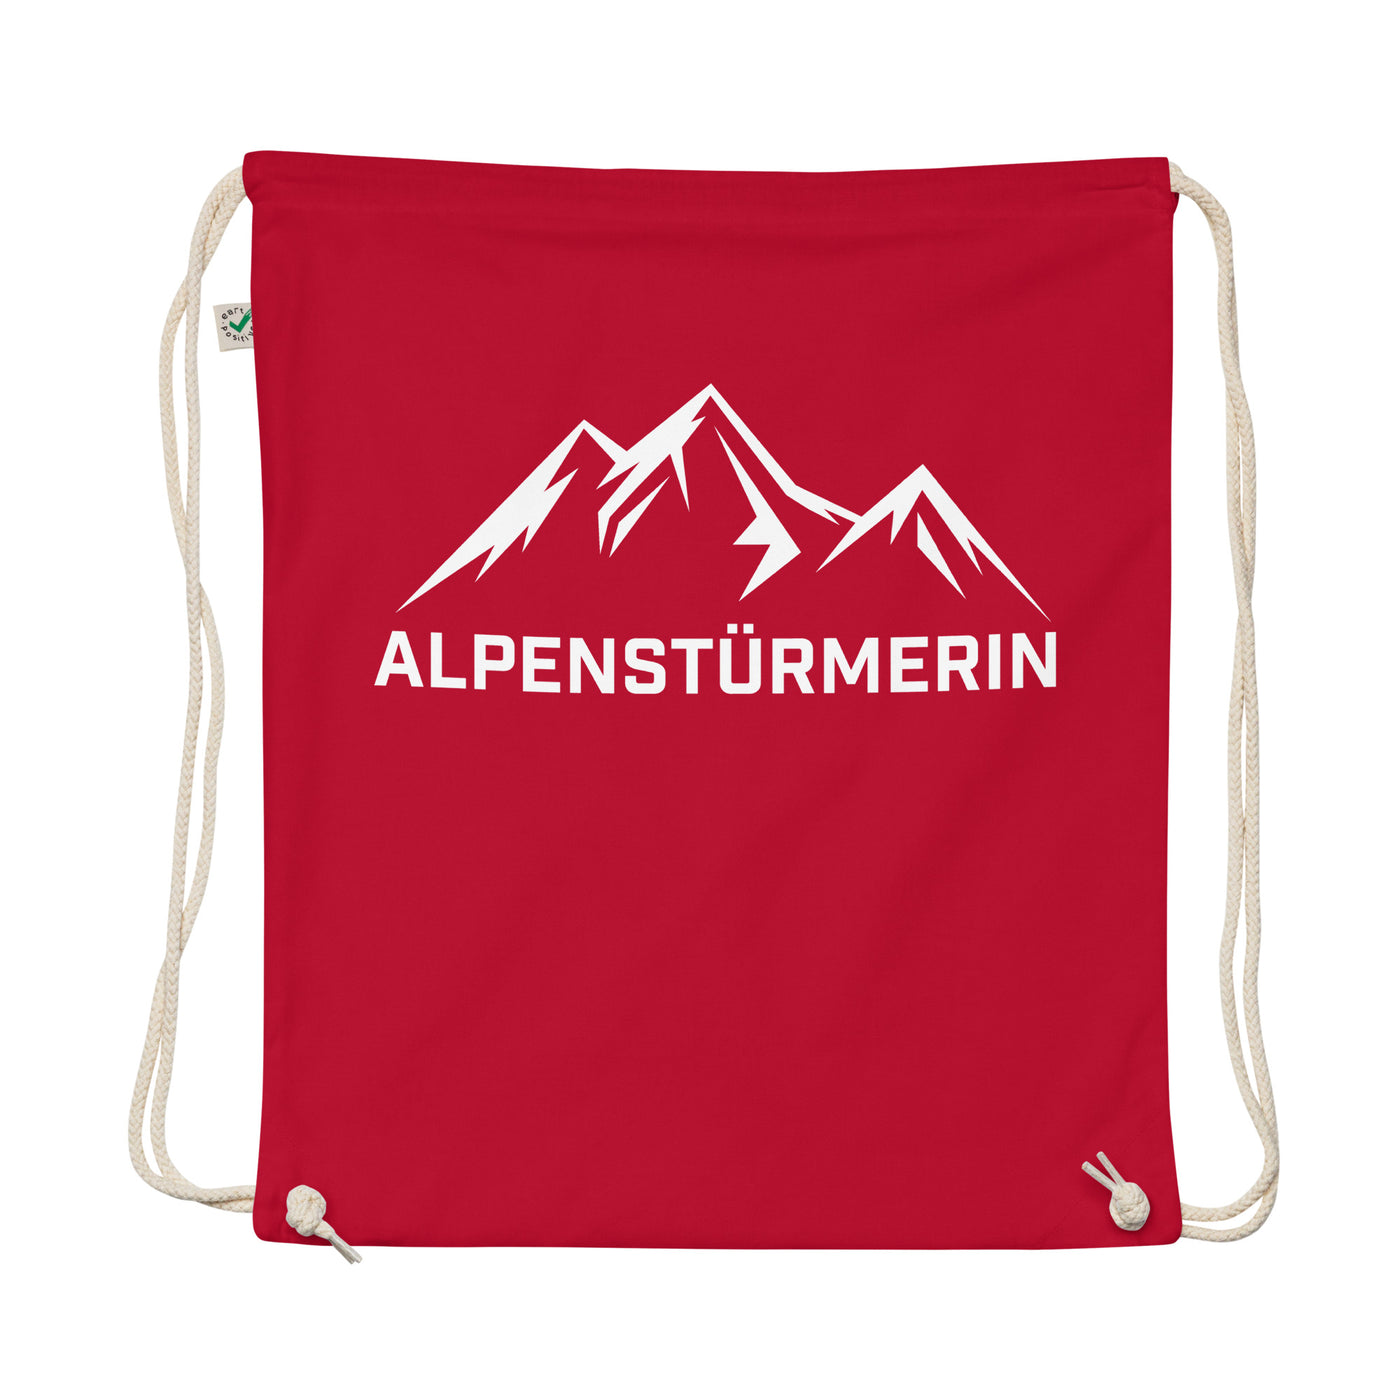 Alpenstürmerin - Organic Turnbeutel berge wandern